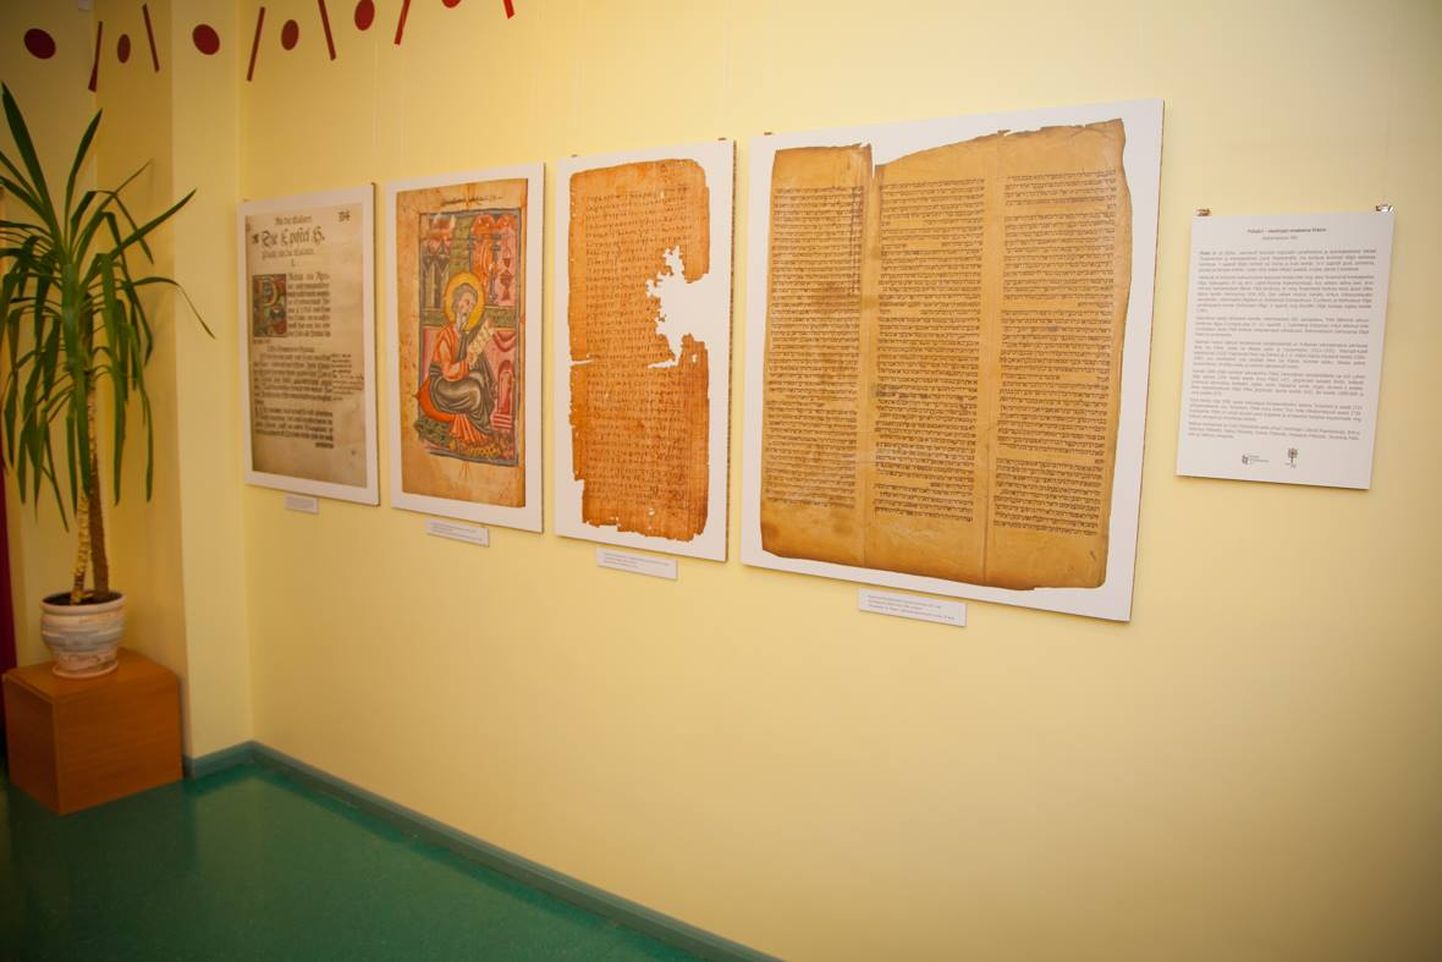 Näitus "Pühakiri – käsikirjast emakeelse piiblini" oli detsembris vaatamiseks Rakveres